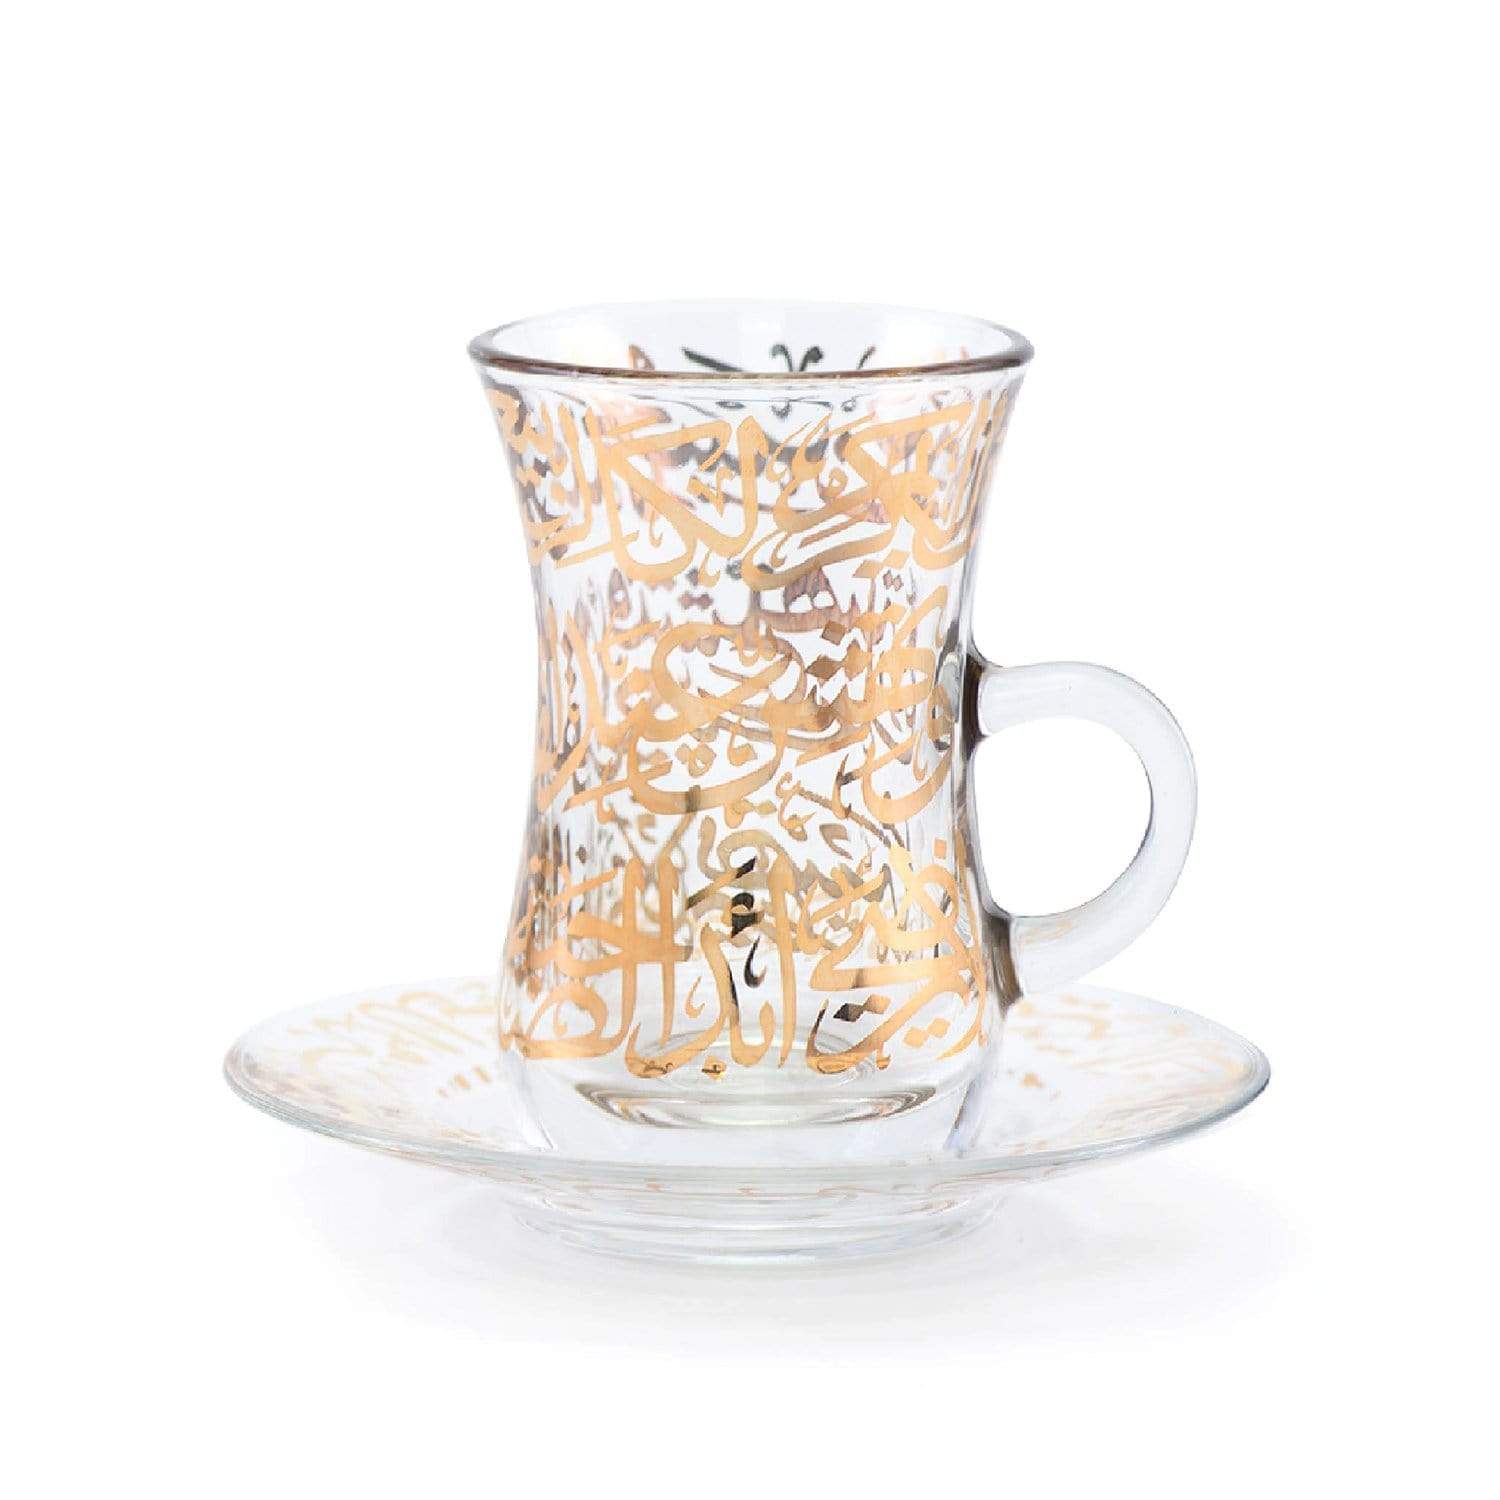 ديملاج طقم شاي كريم زجاجي وصحن - شفاف وذهبي، 12 قطعة - 46761 - جاشنمال هوم